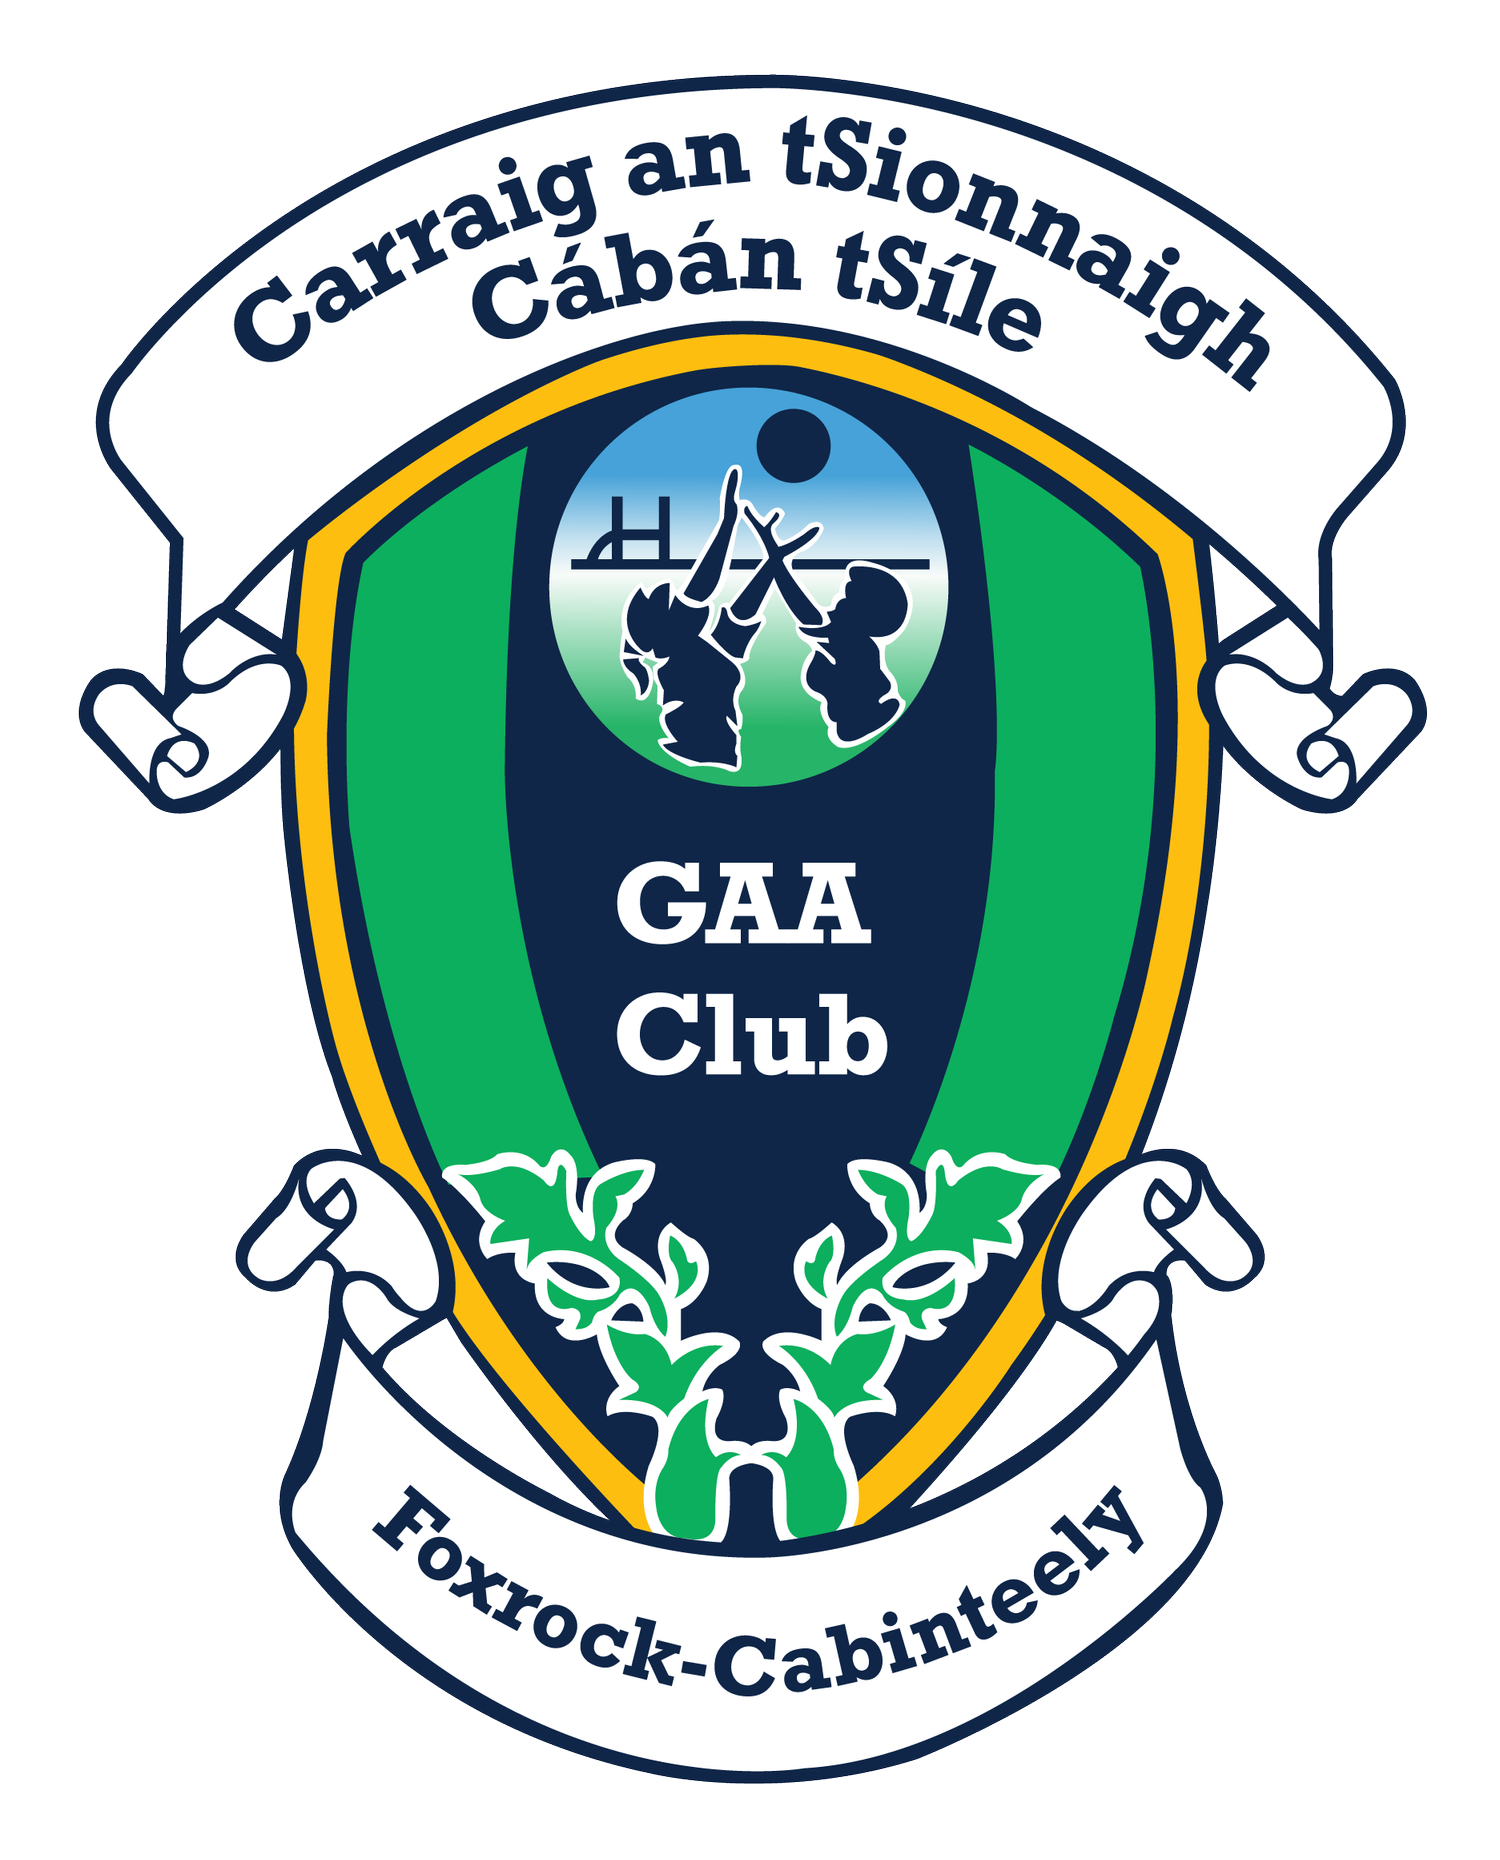 FoxCabGaa - Foxrock Cabinteely GAA Club